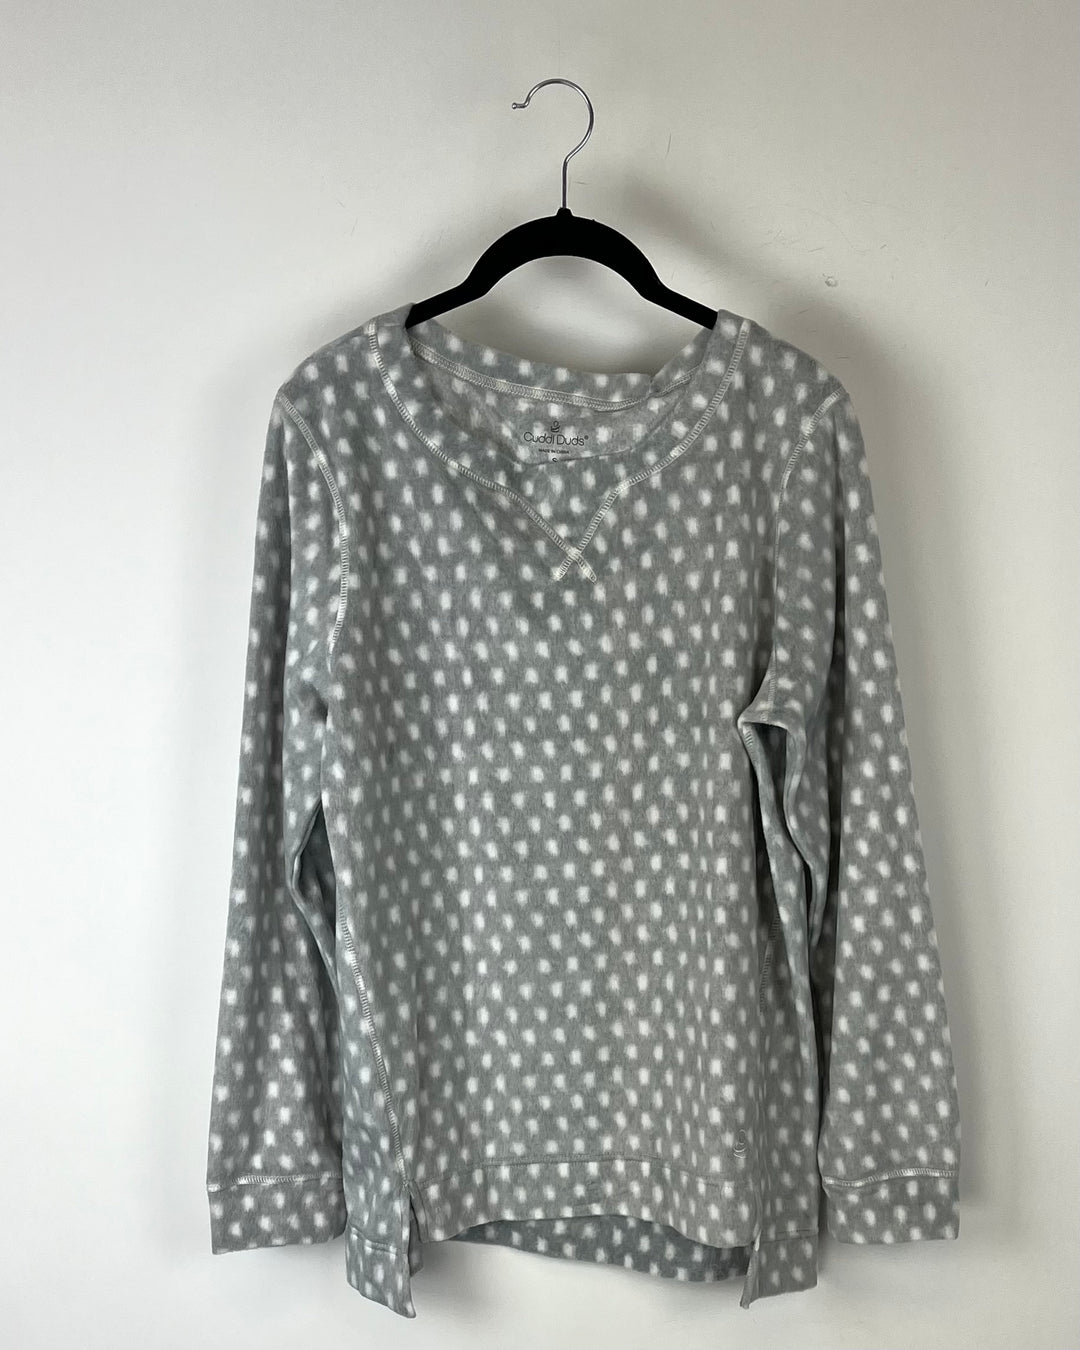 Soft and Cozy Grey Polka Dot Sleepwear Top - Size 6-8